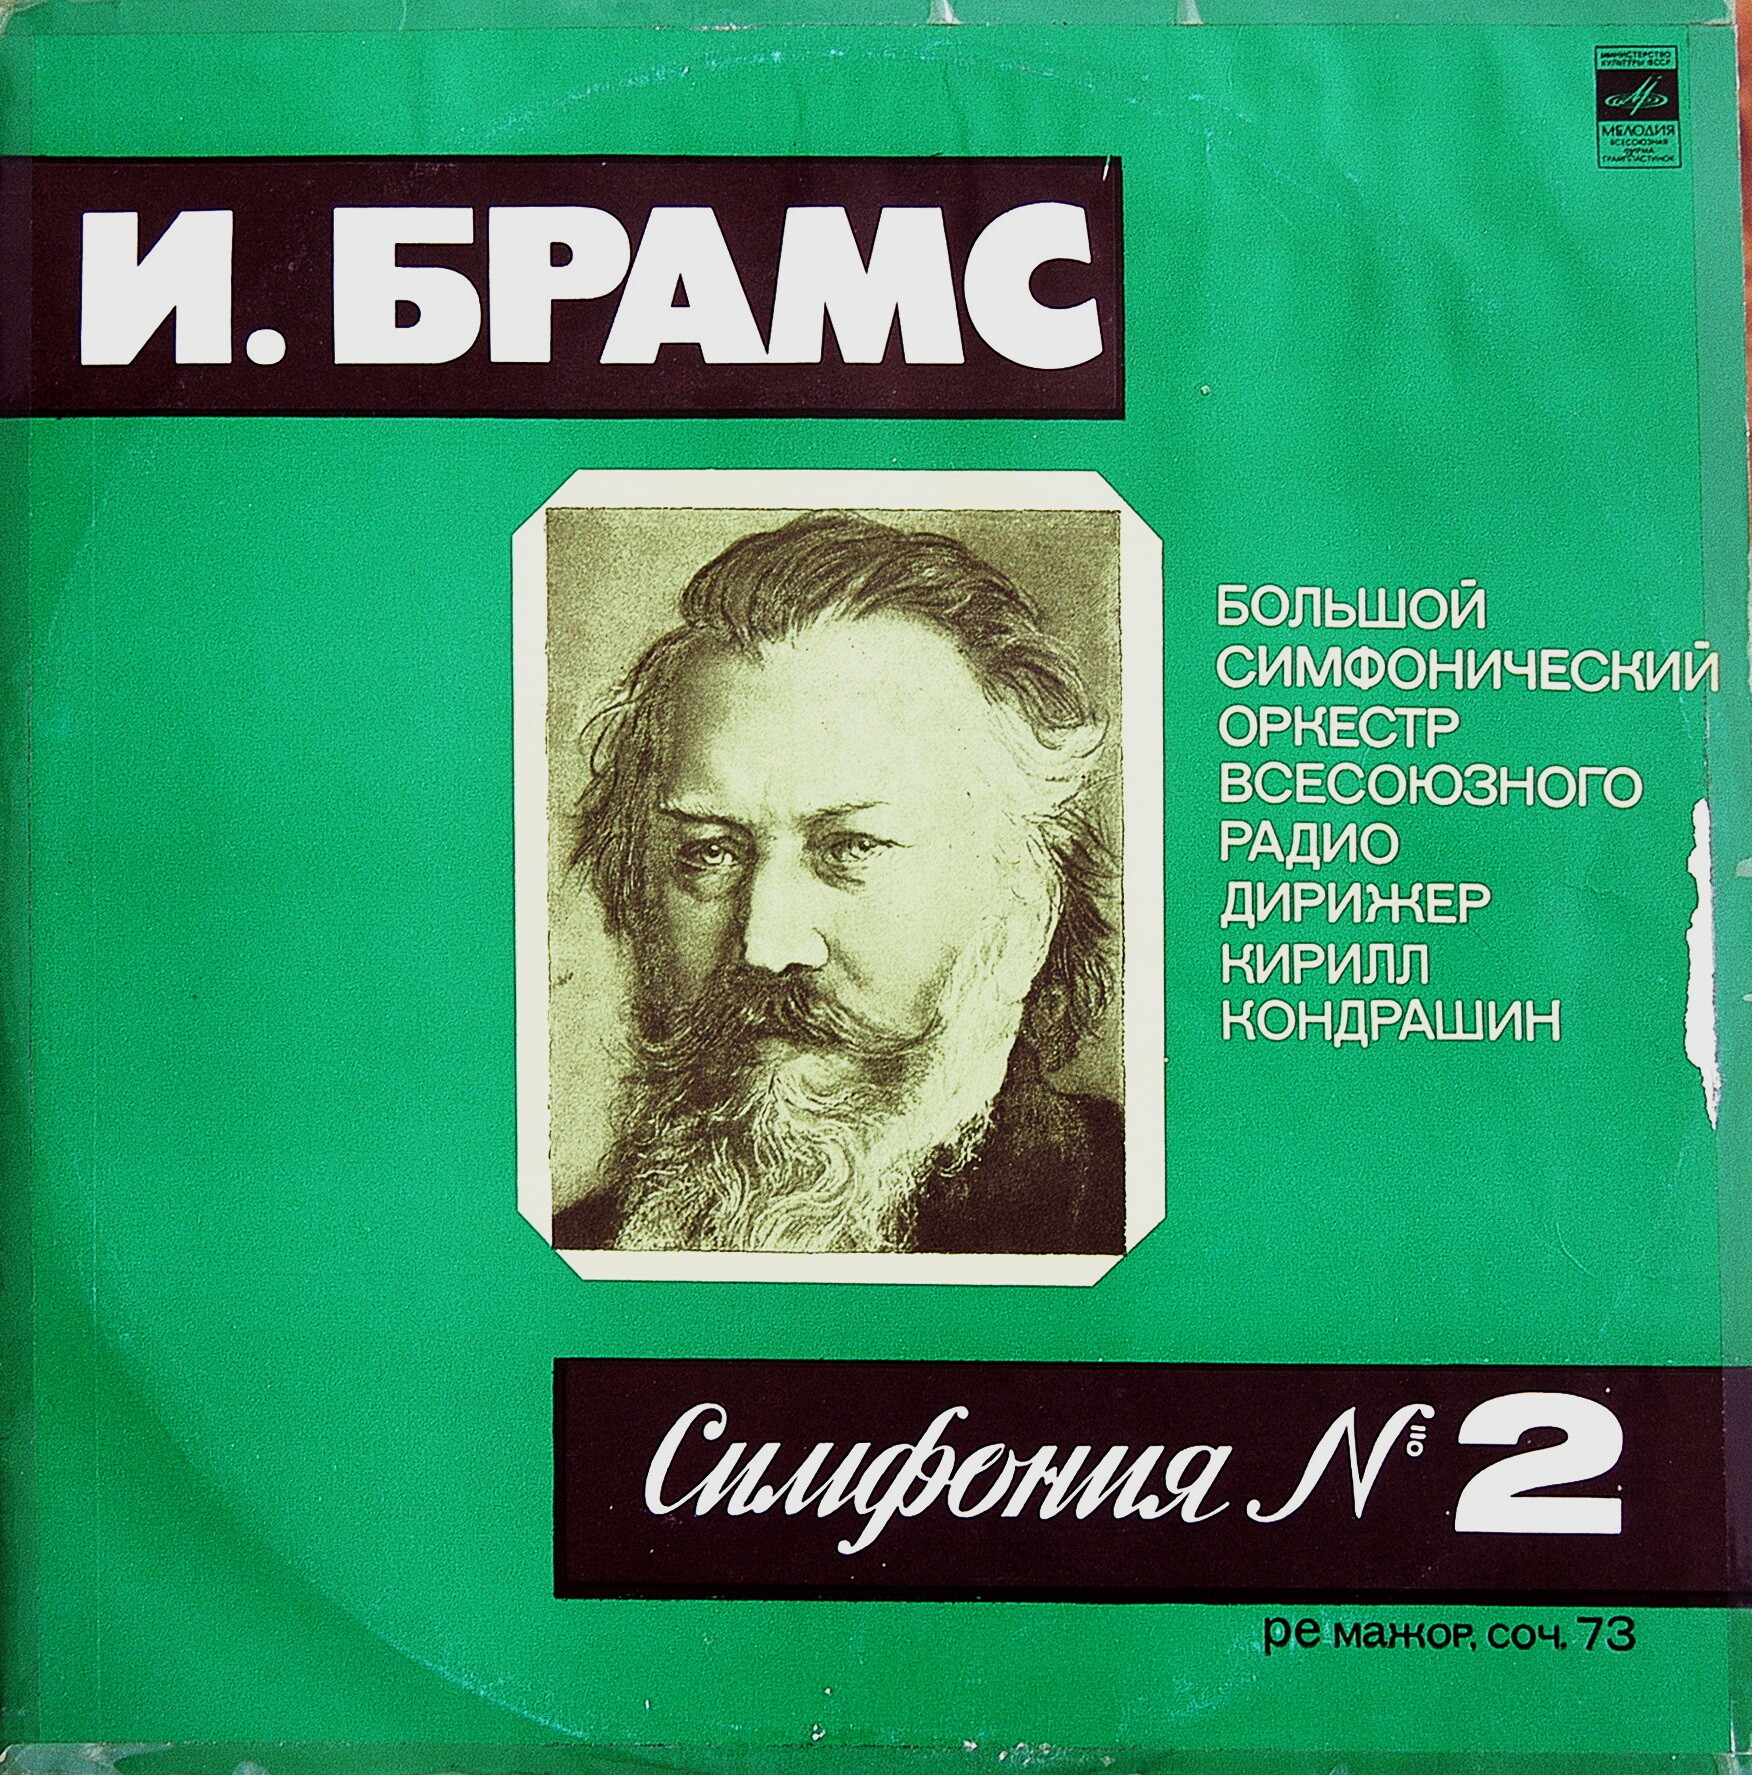 И. БРАМС: Симфония № 2 ре мажор, соч. 73 (К. Кондрашин)